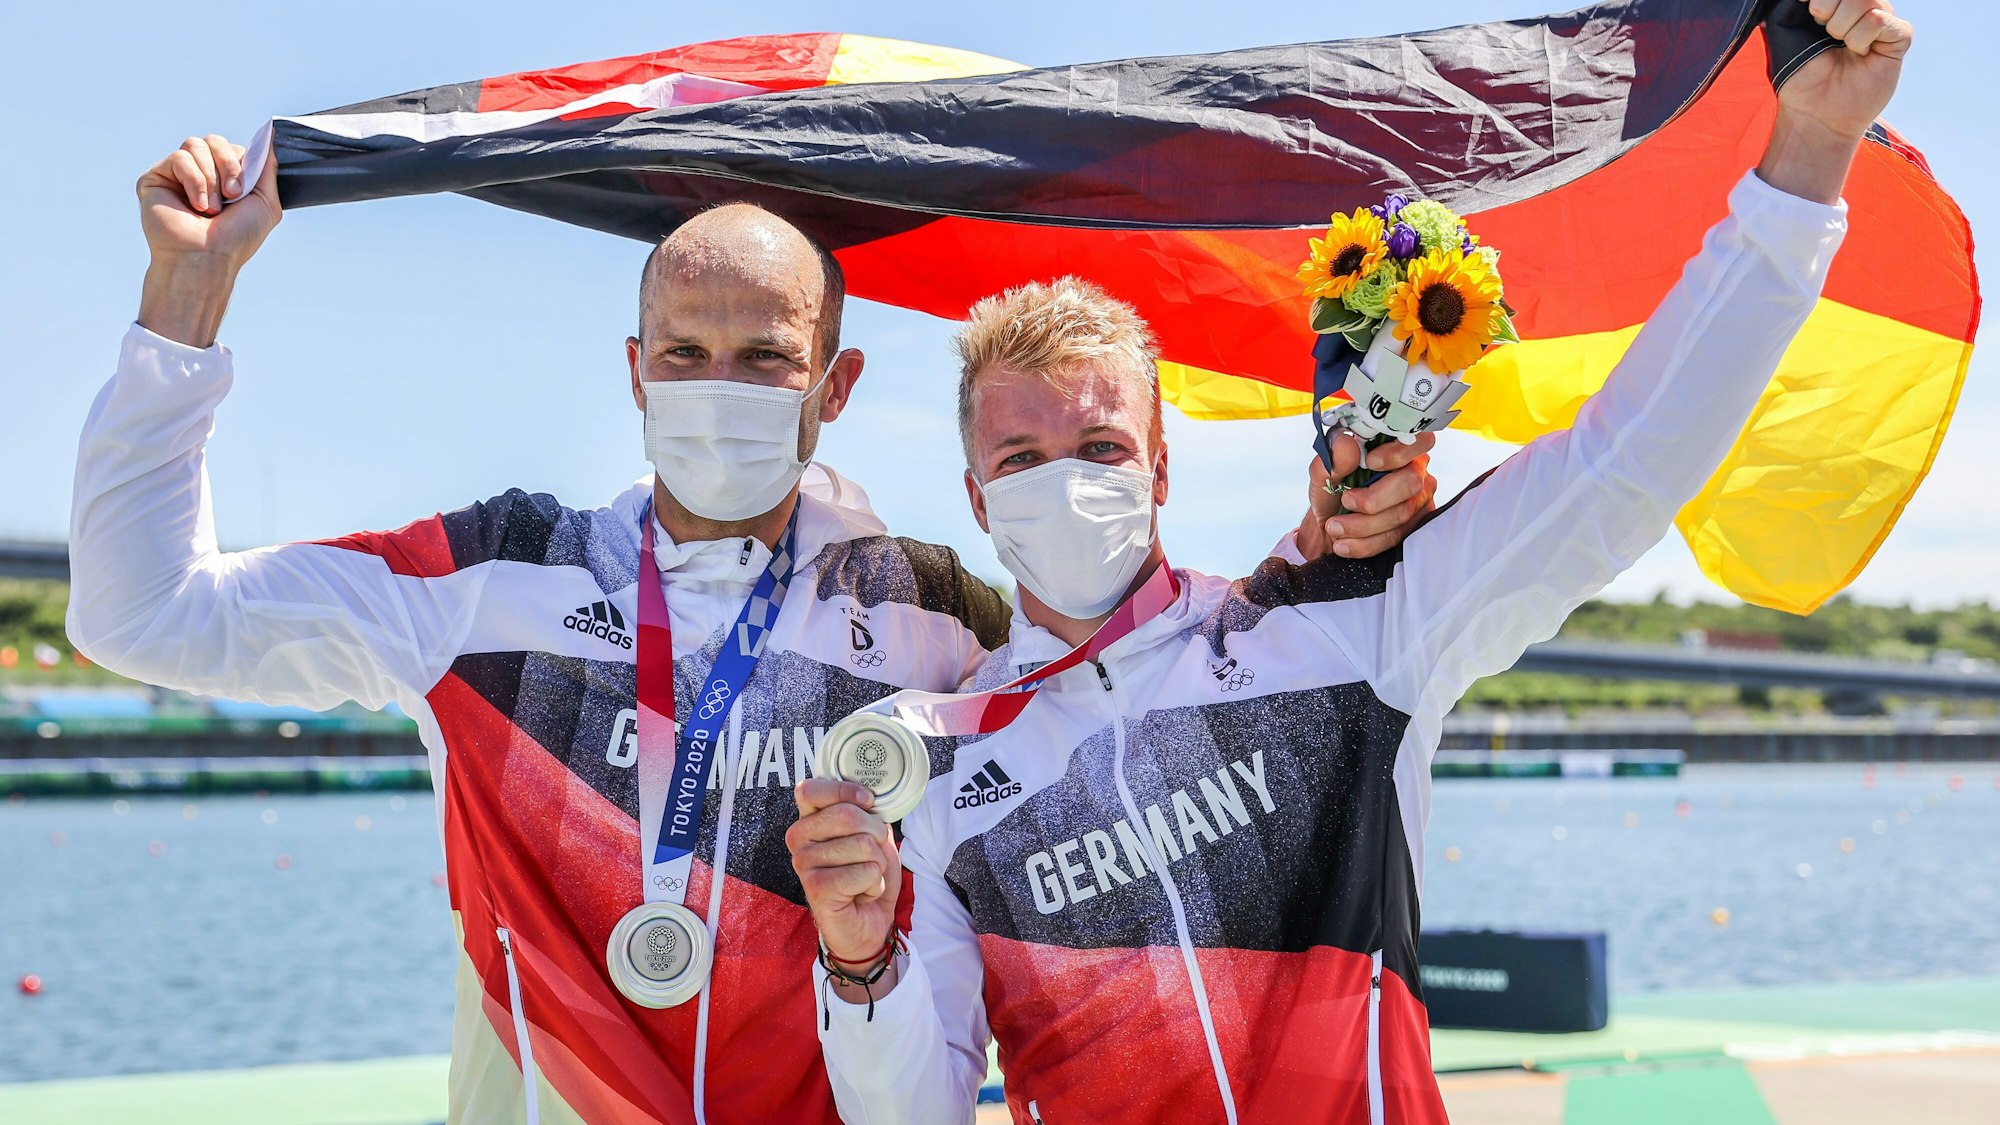 Kajak-Rennsportler Max Hoff und Jacob Schopf posieren nach der Siegerehrung bei den Olympischen Spielen mit ihrer Silbermedaille im Kajak-Zweier.